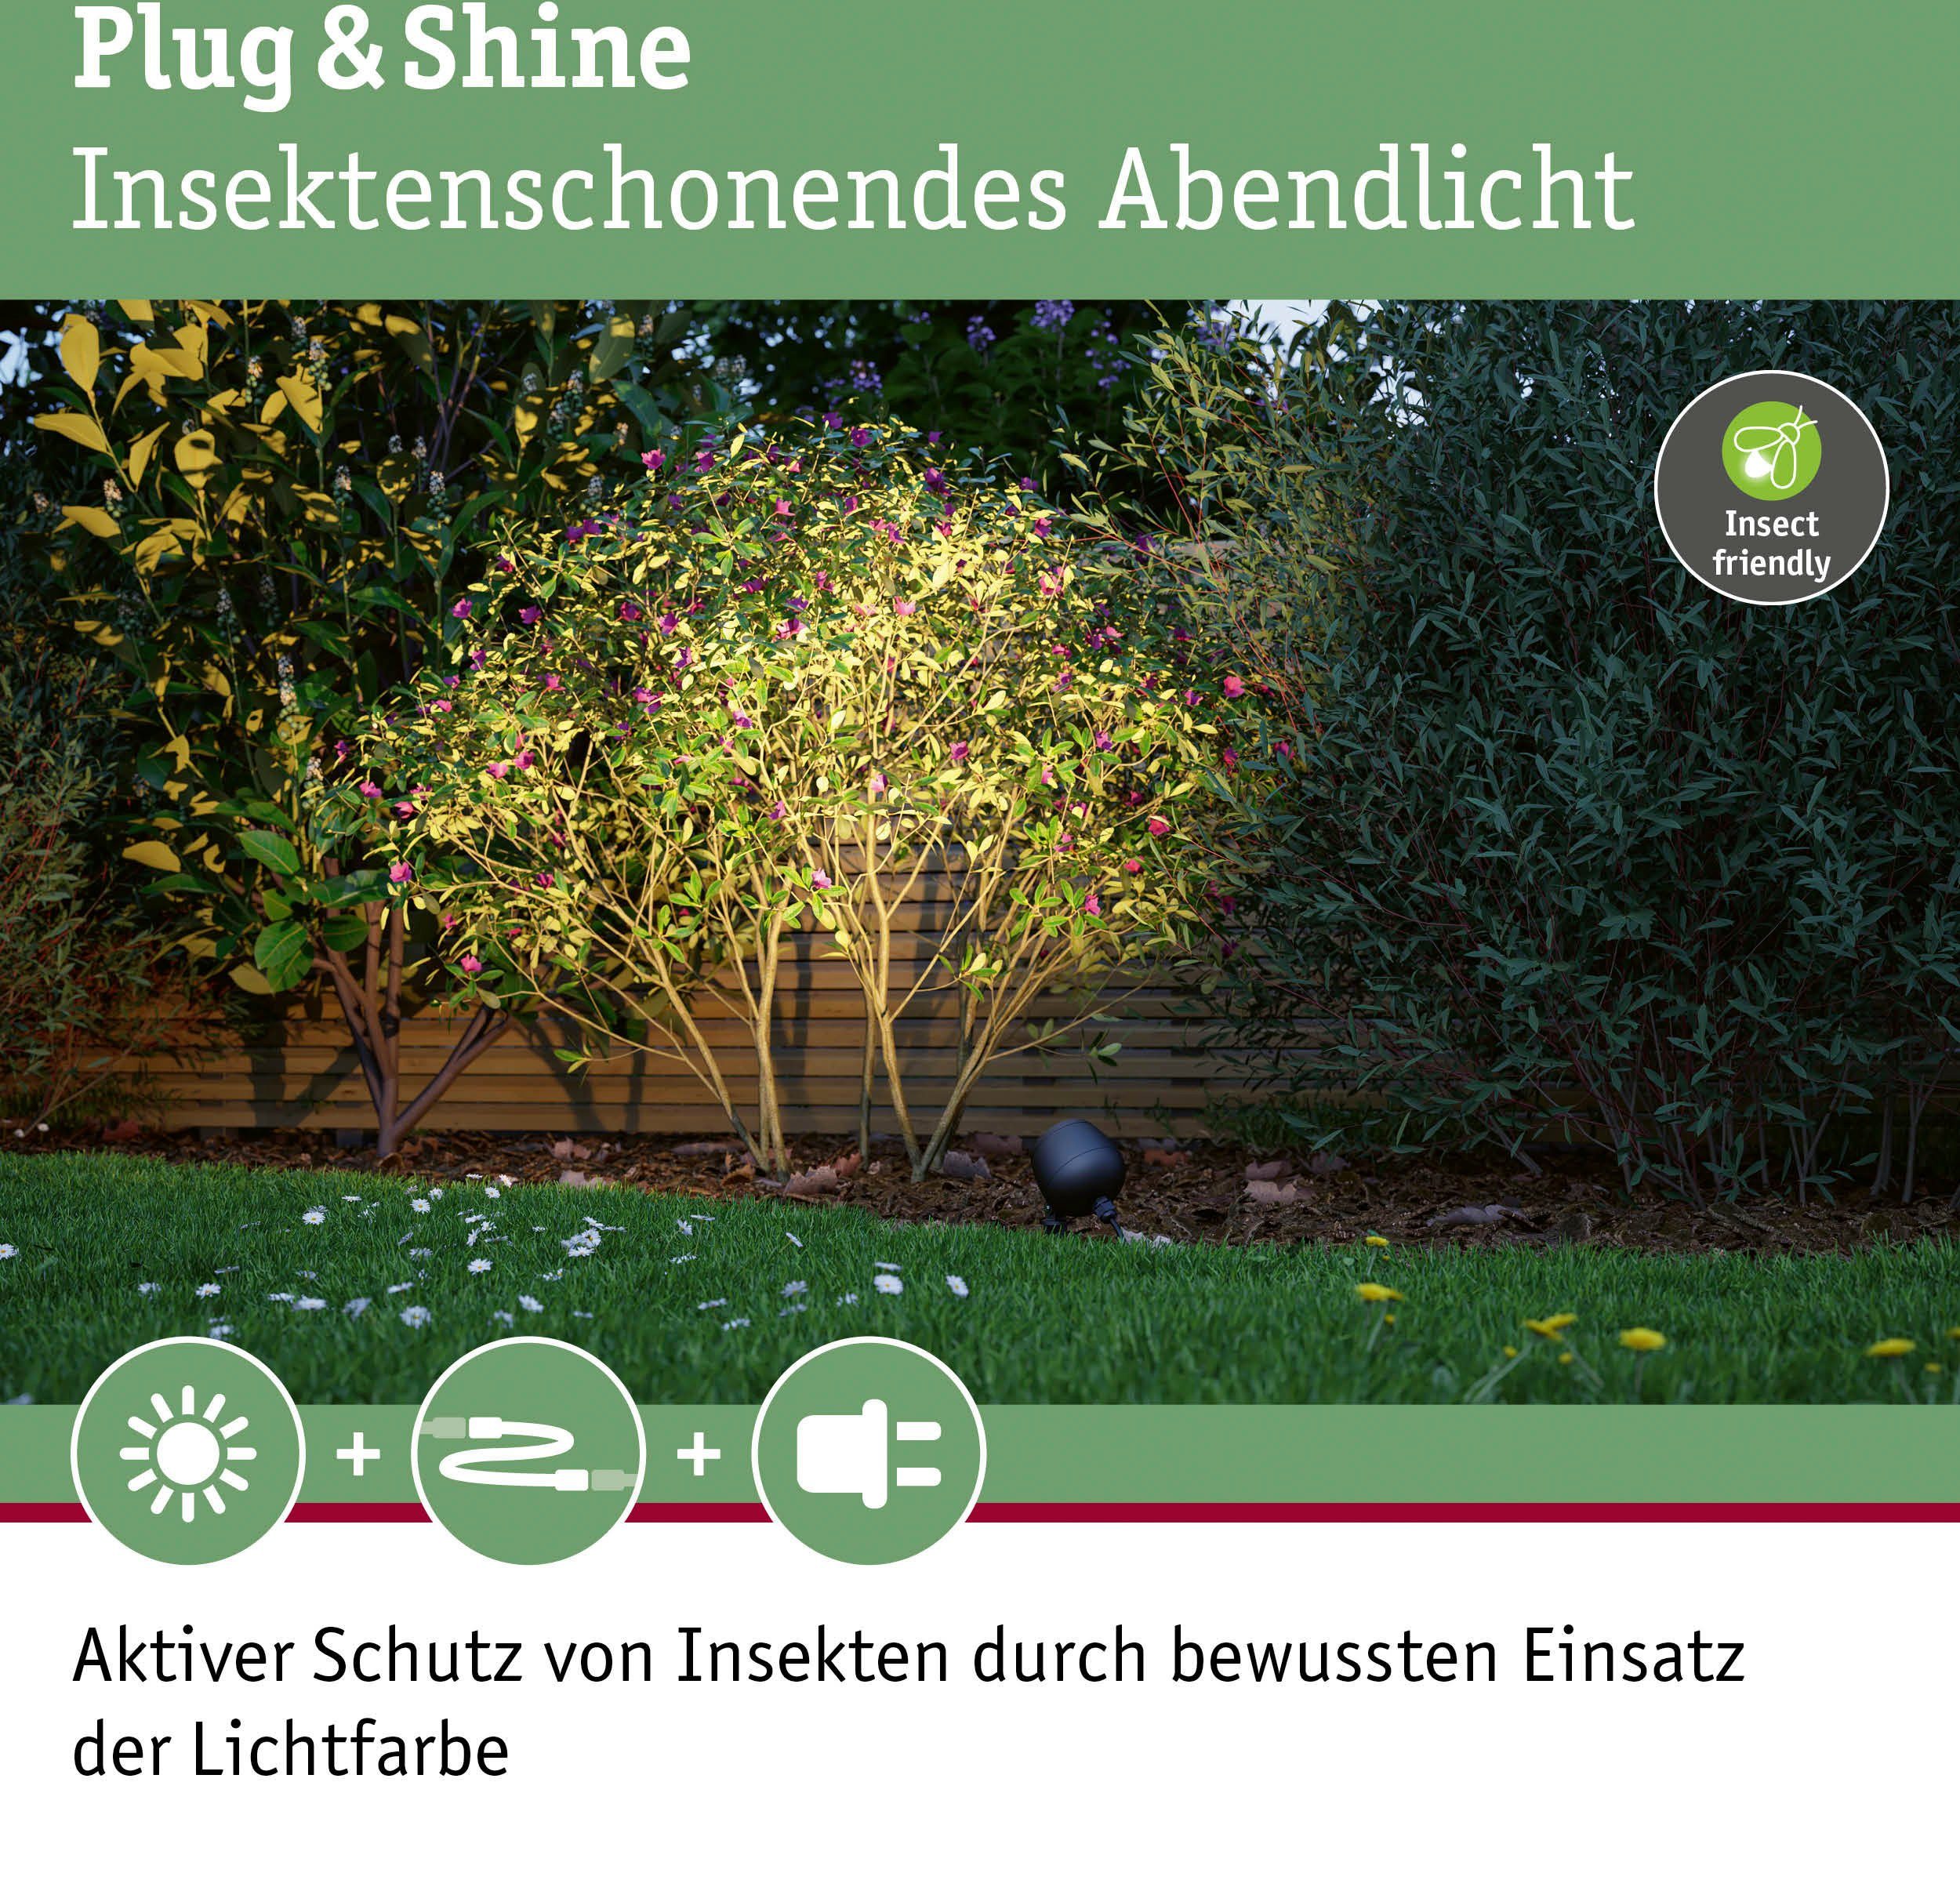 ZigBee, Insektenfreundlich Plug friendly fest Insect Kikolo Paulmann Gartenleuchte Spot Warmweiß, LED & Shine LED Outdoor integriert,